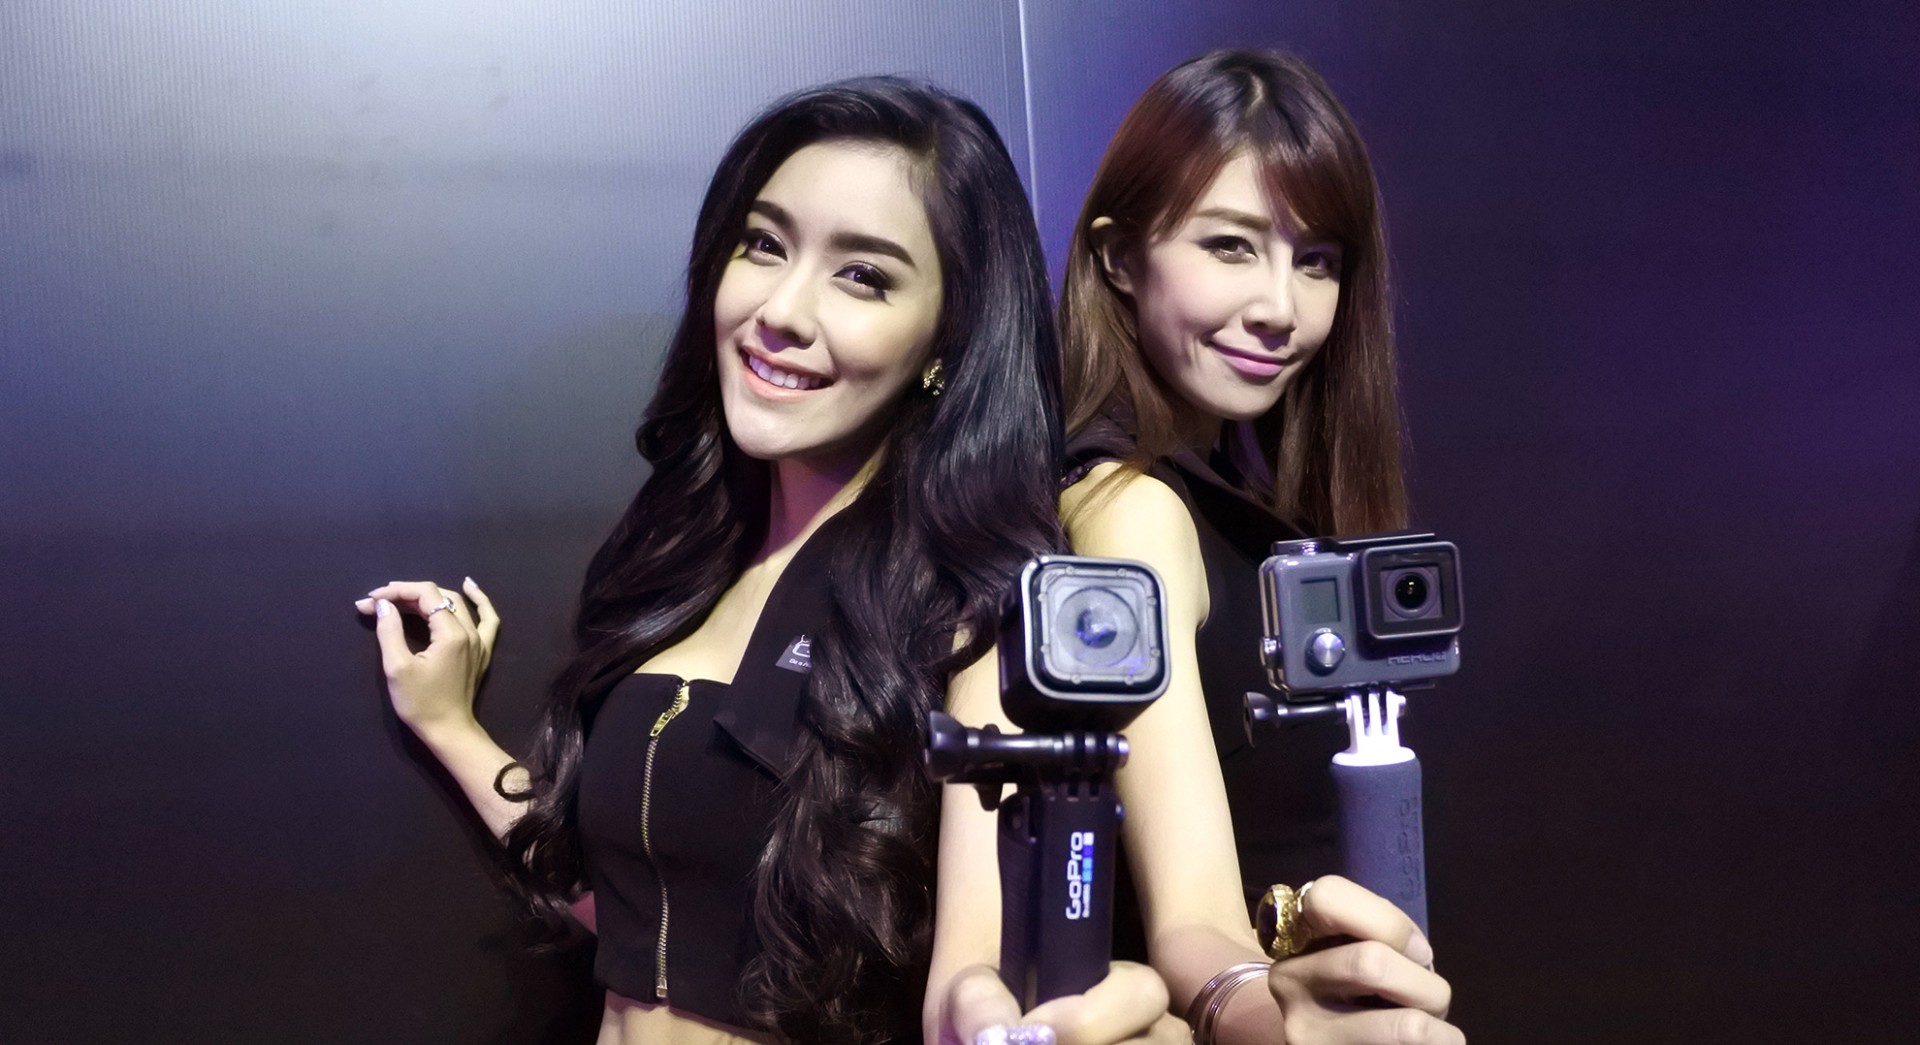 GoPro HERO4 Session และ HERO+ LCD เปิดตัวอย่างเป็นทางการในไทย